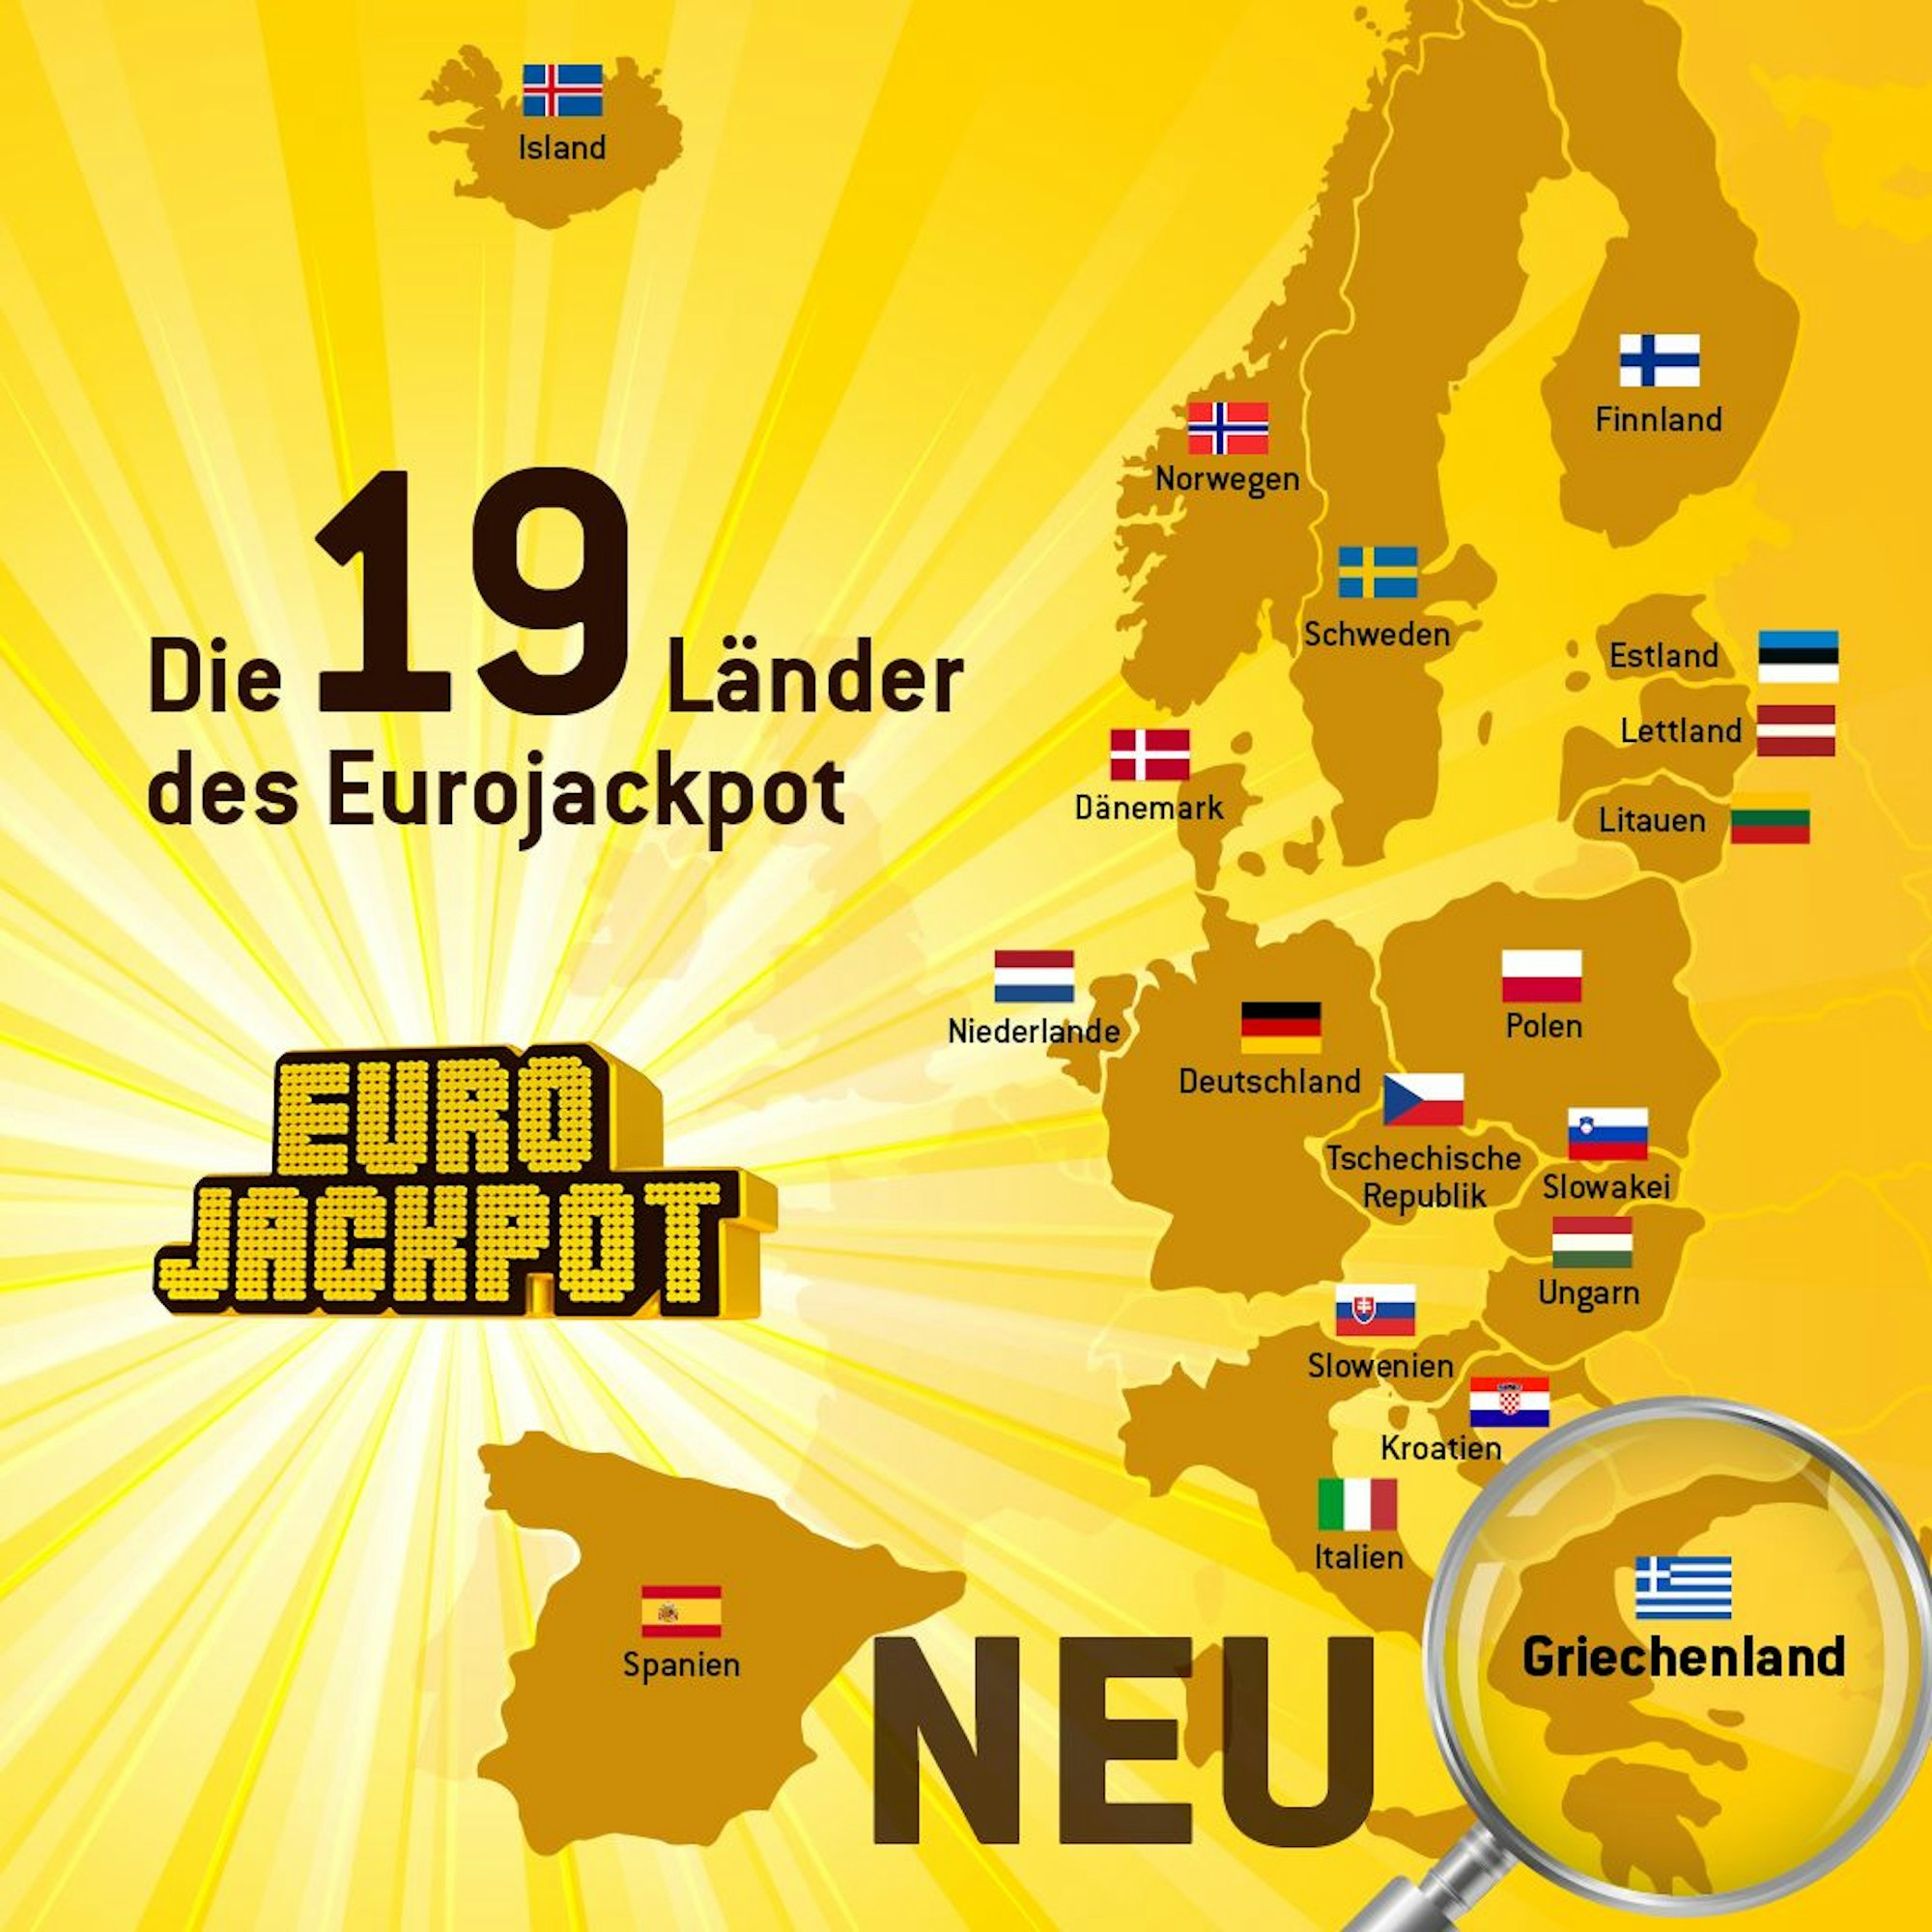 Die 19 Teilnahme-Länder des Eurojackpot auf einer Karte.